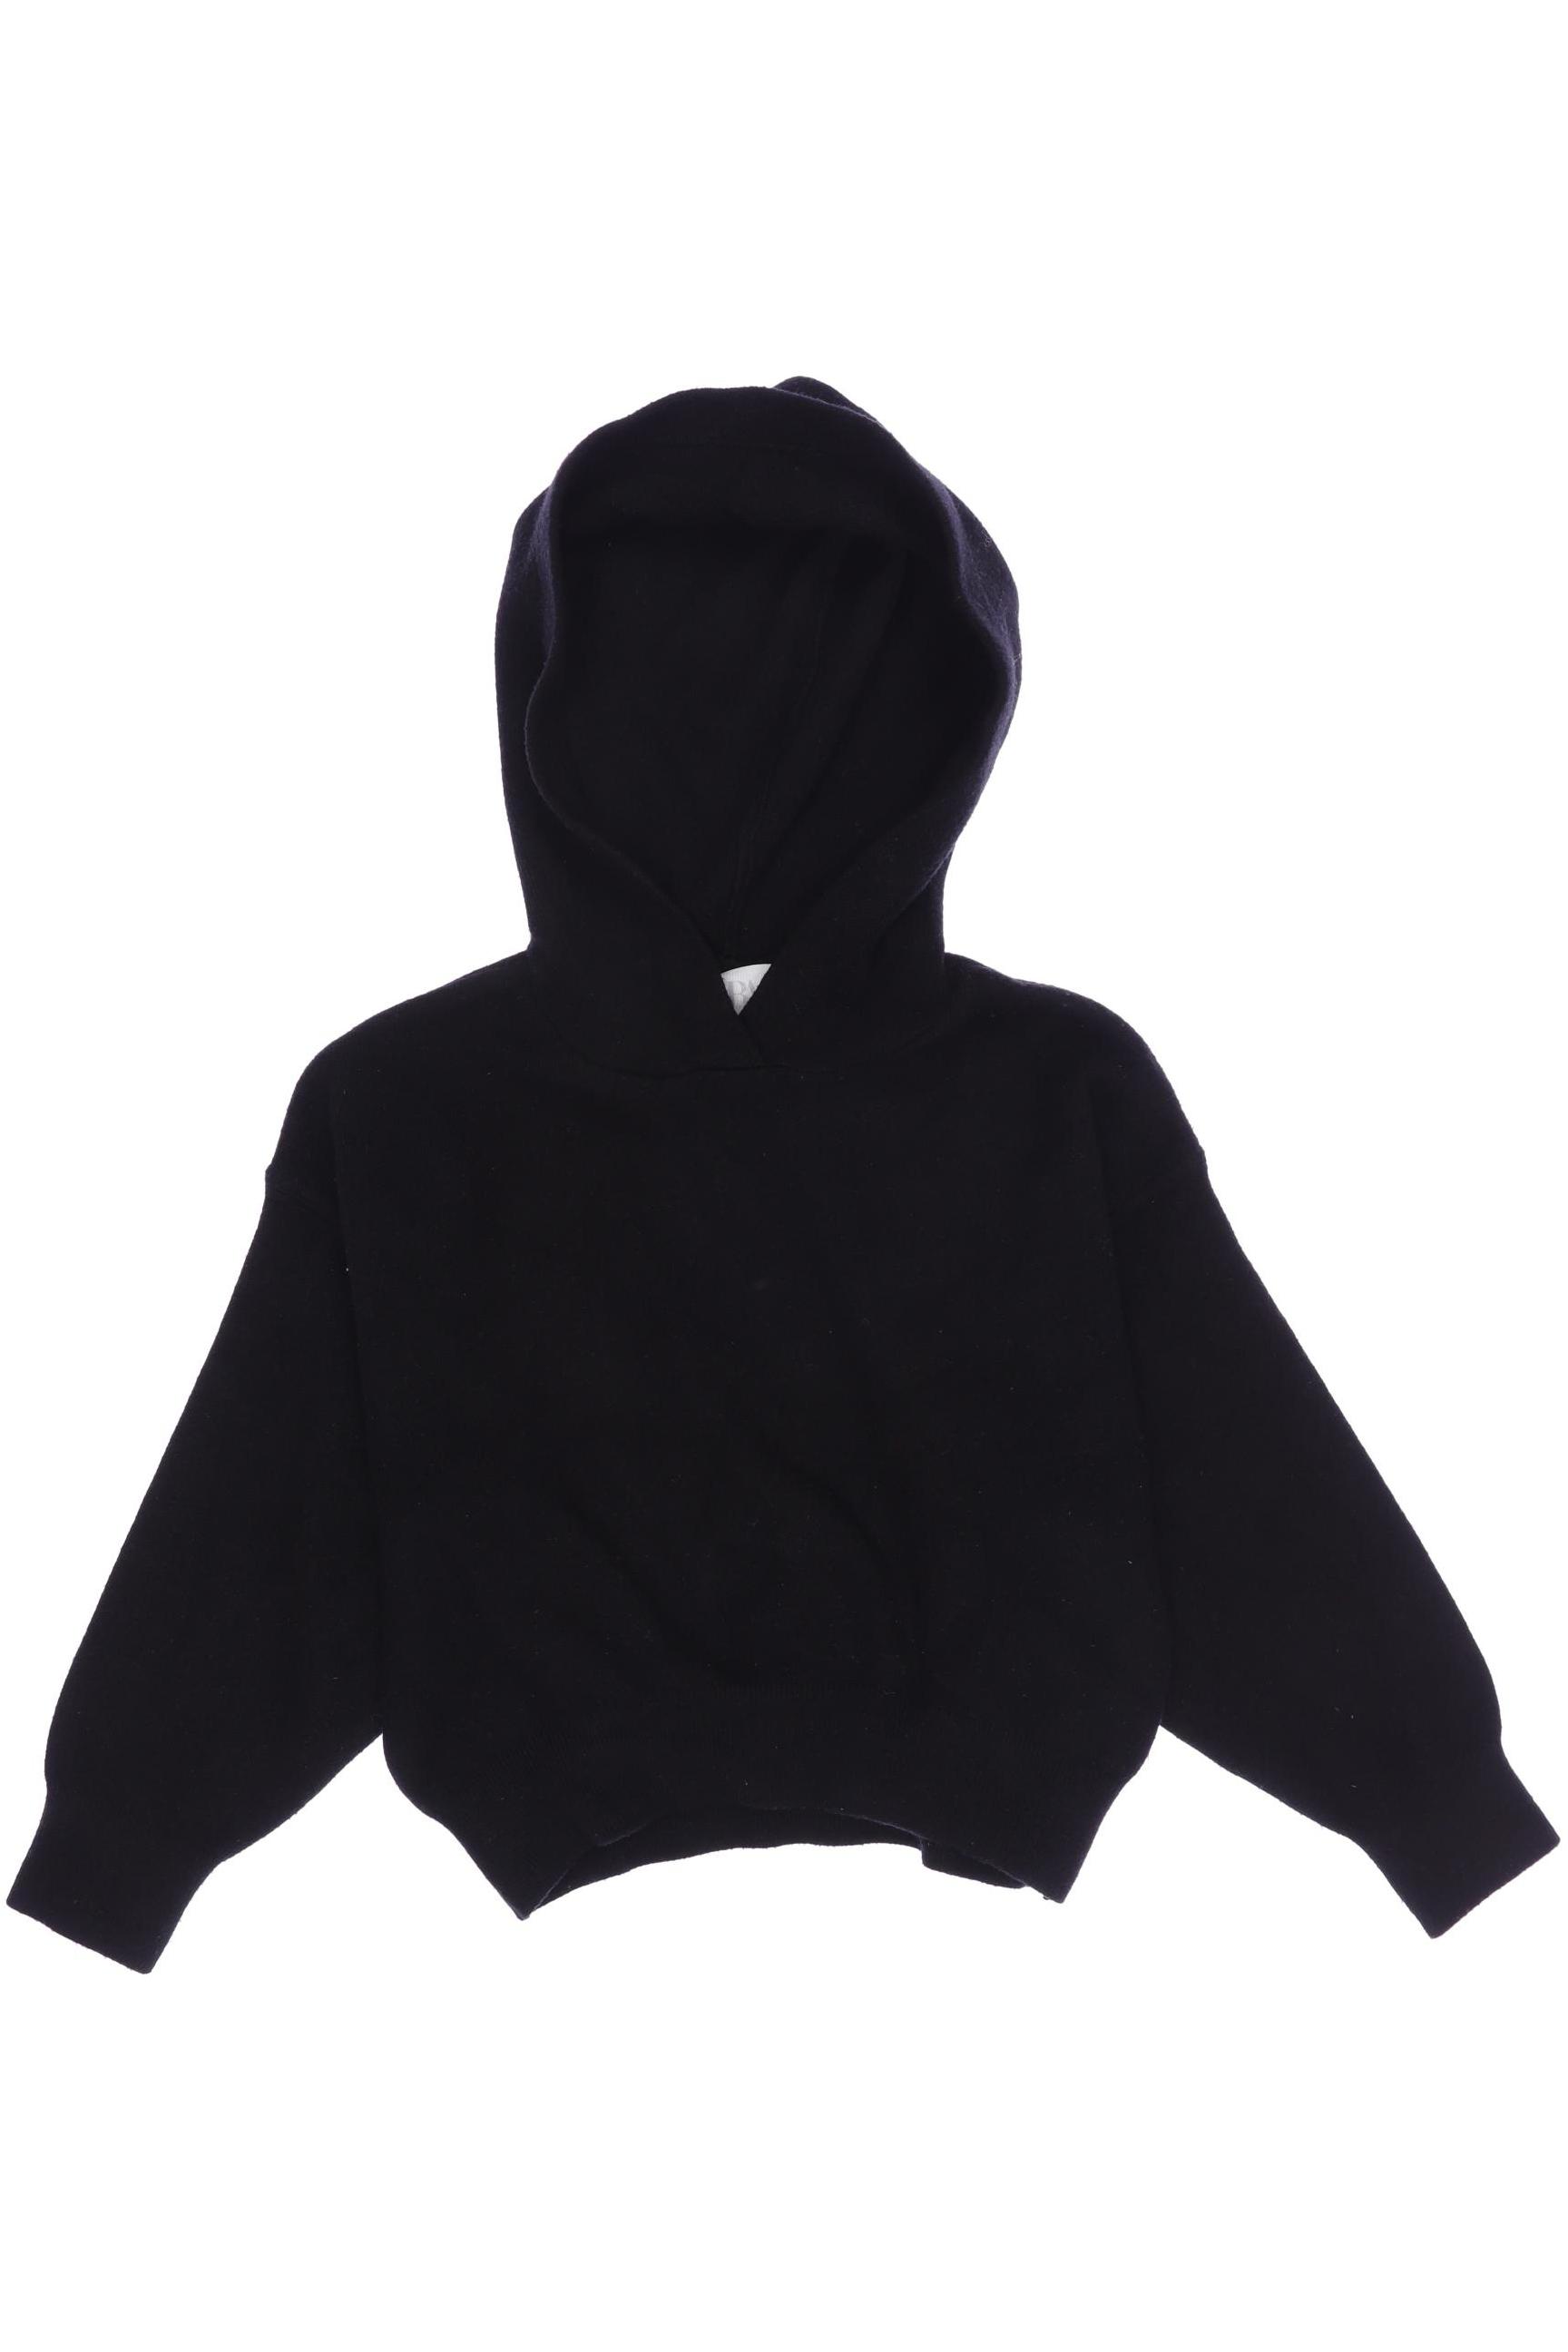 Zara Damen Pullover, schwarz, Gr. 116 von ZARA